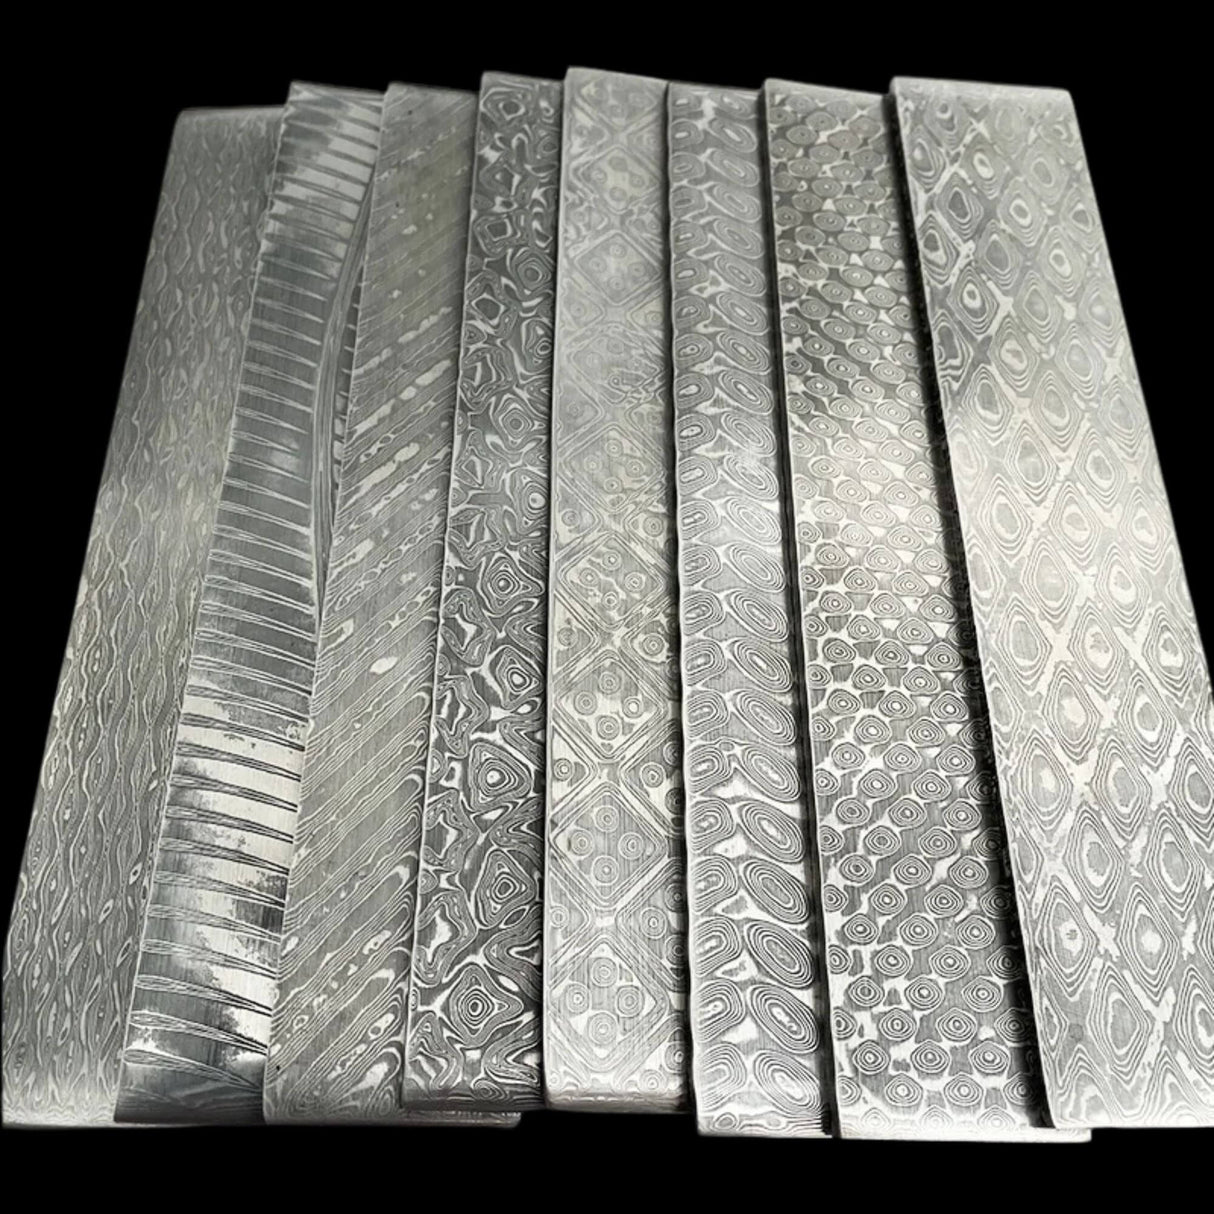 Damascus Steel For DIY Knife